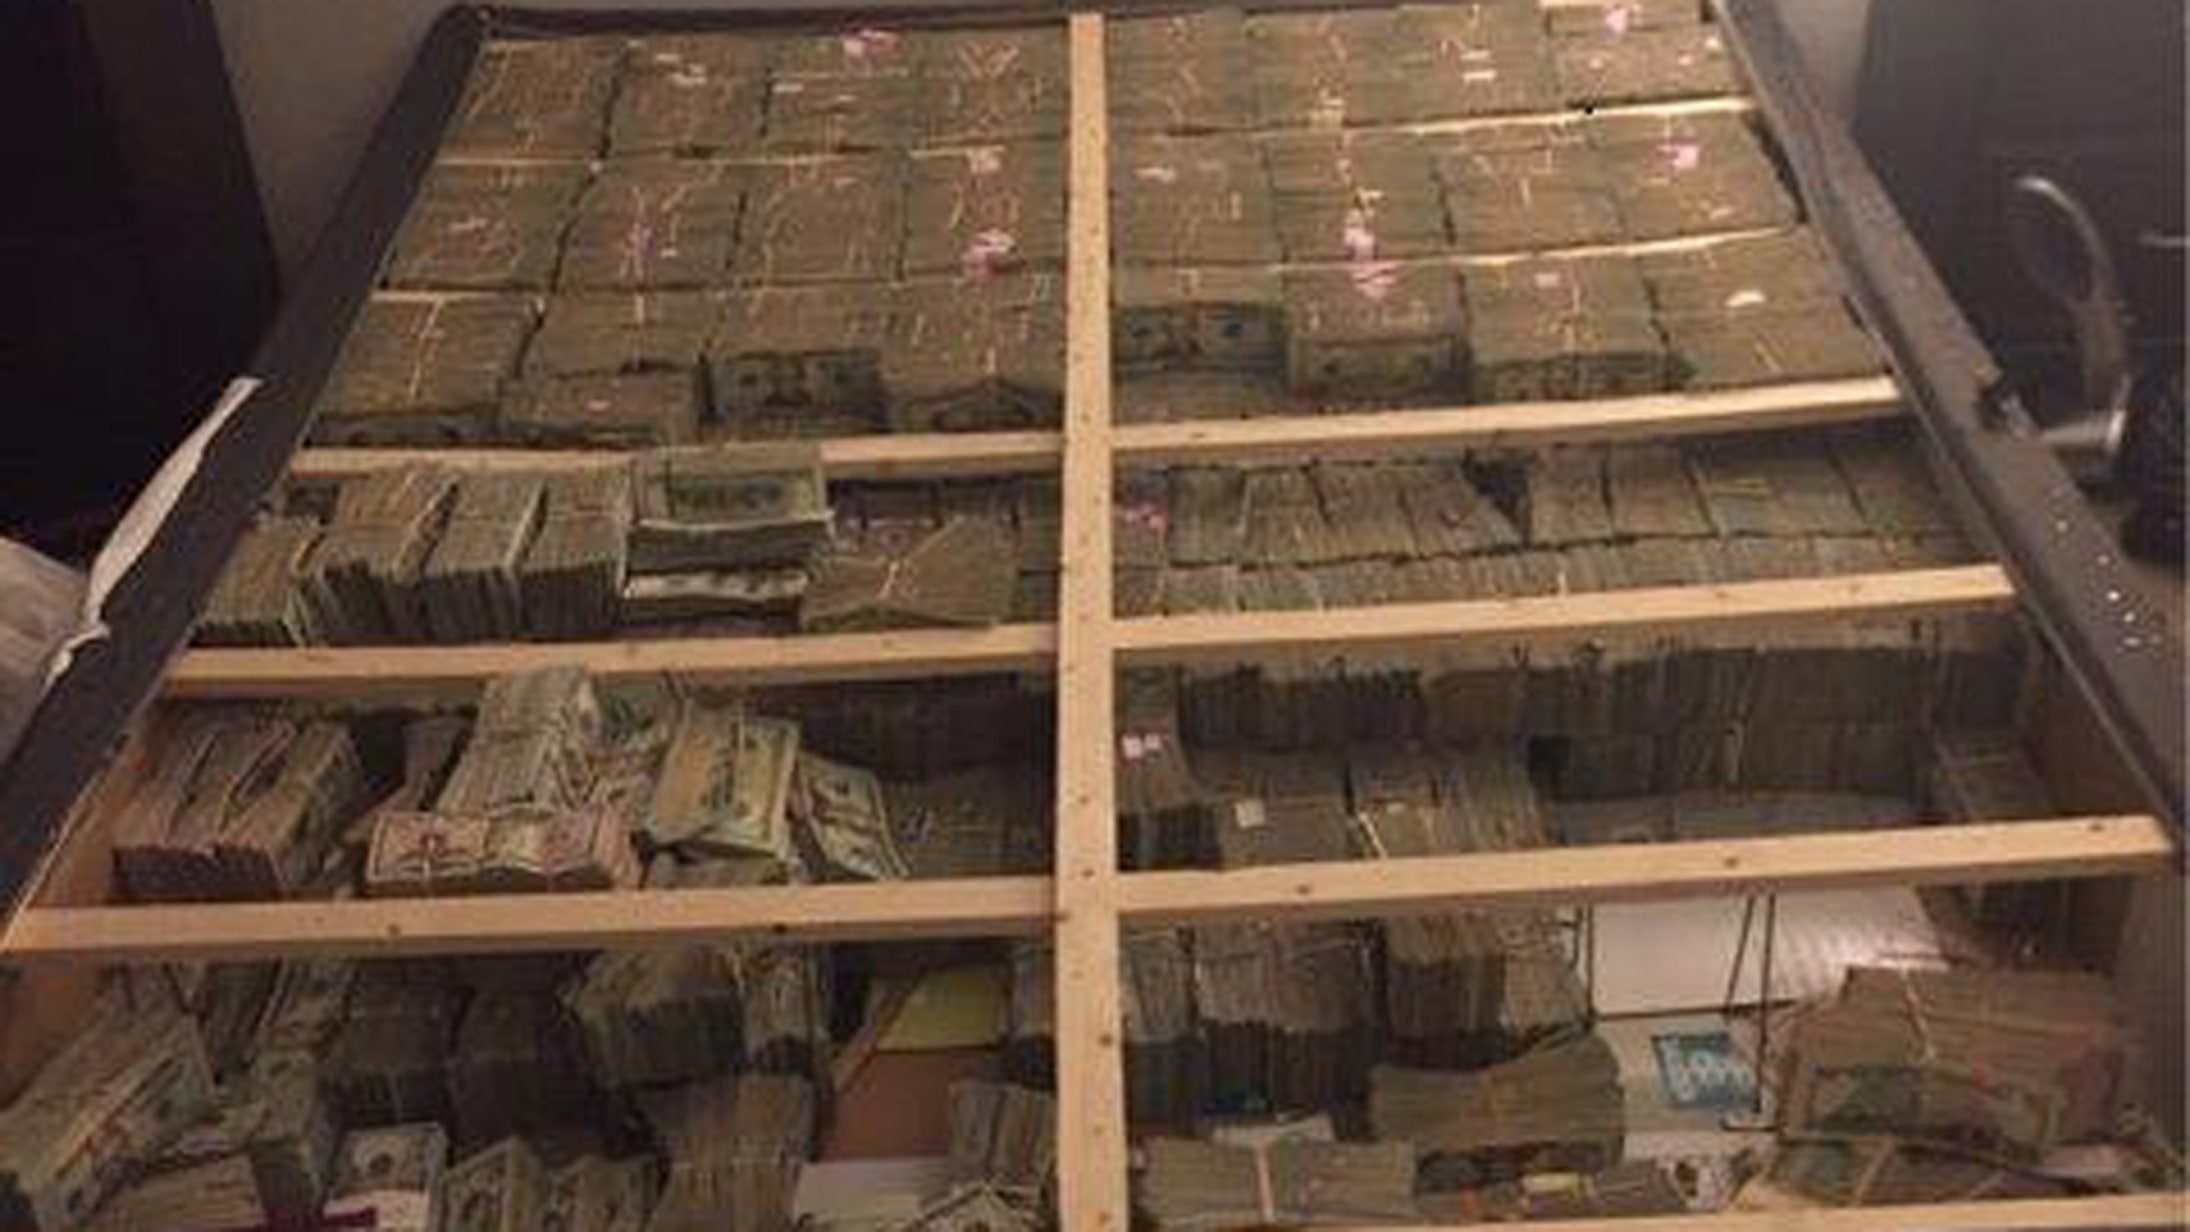 фото денег на полу